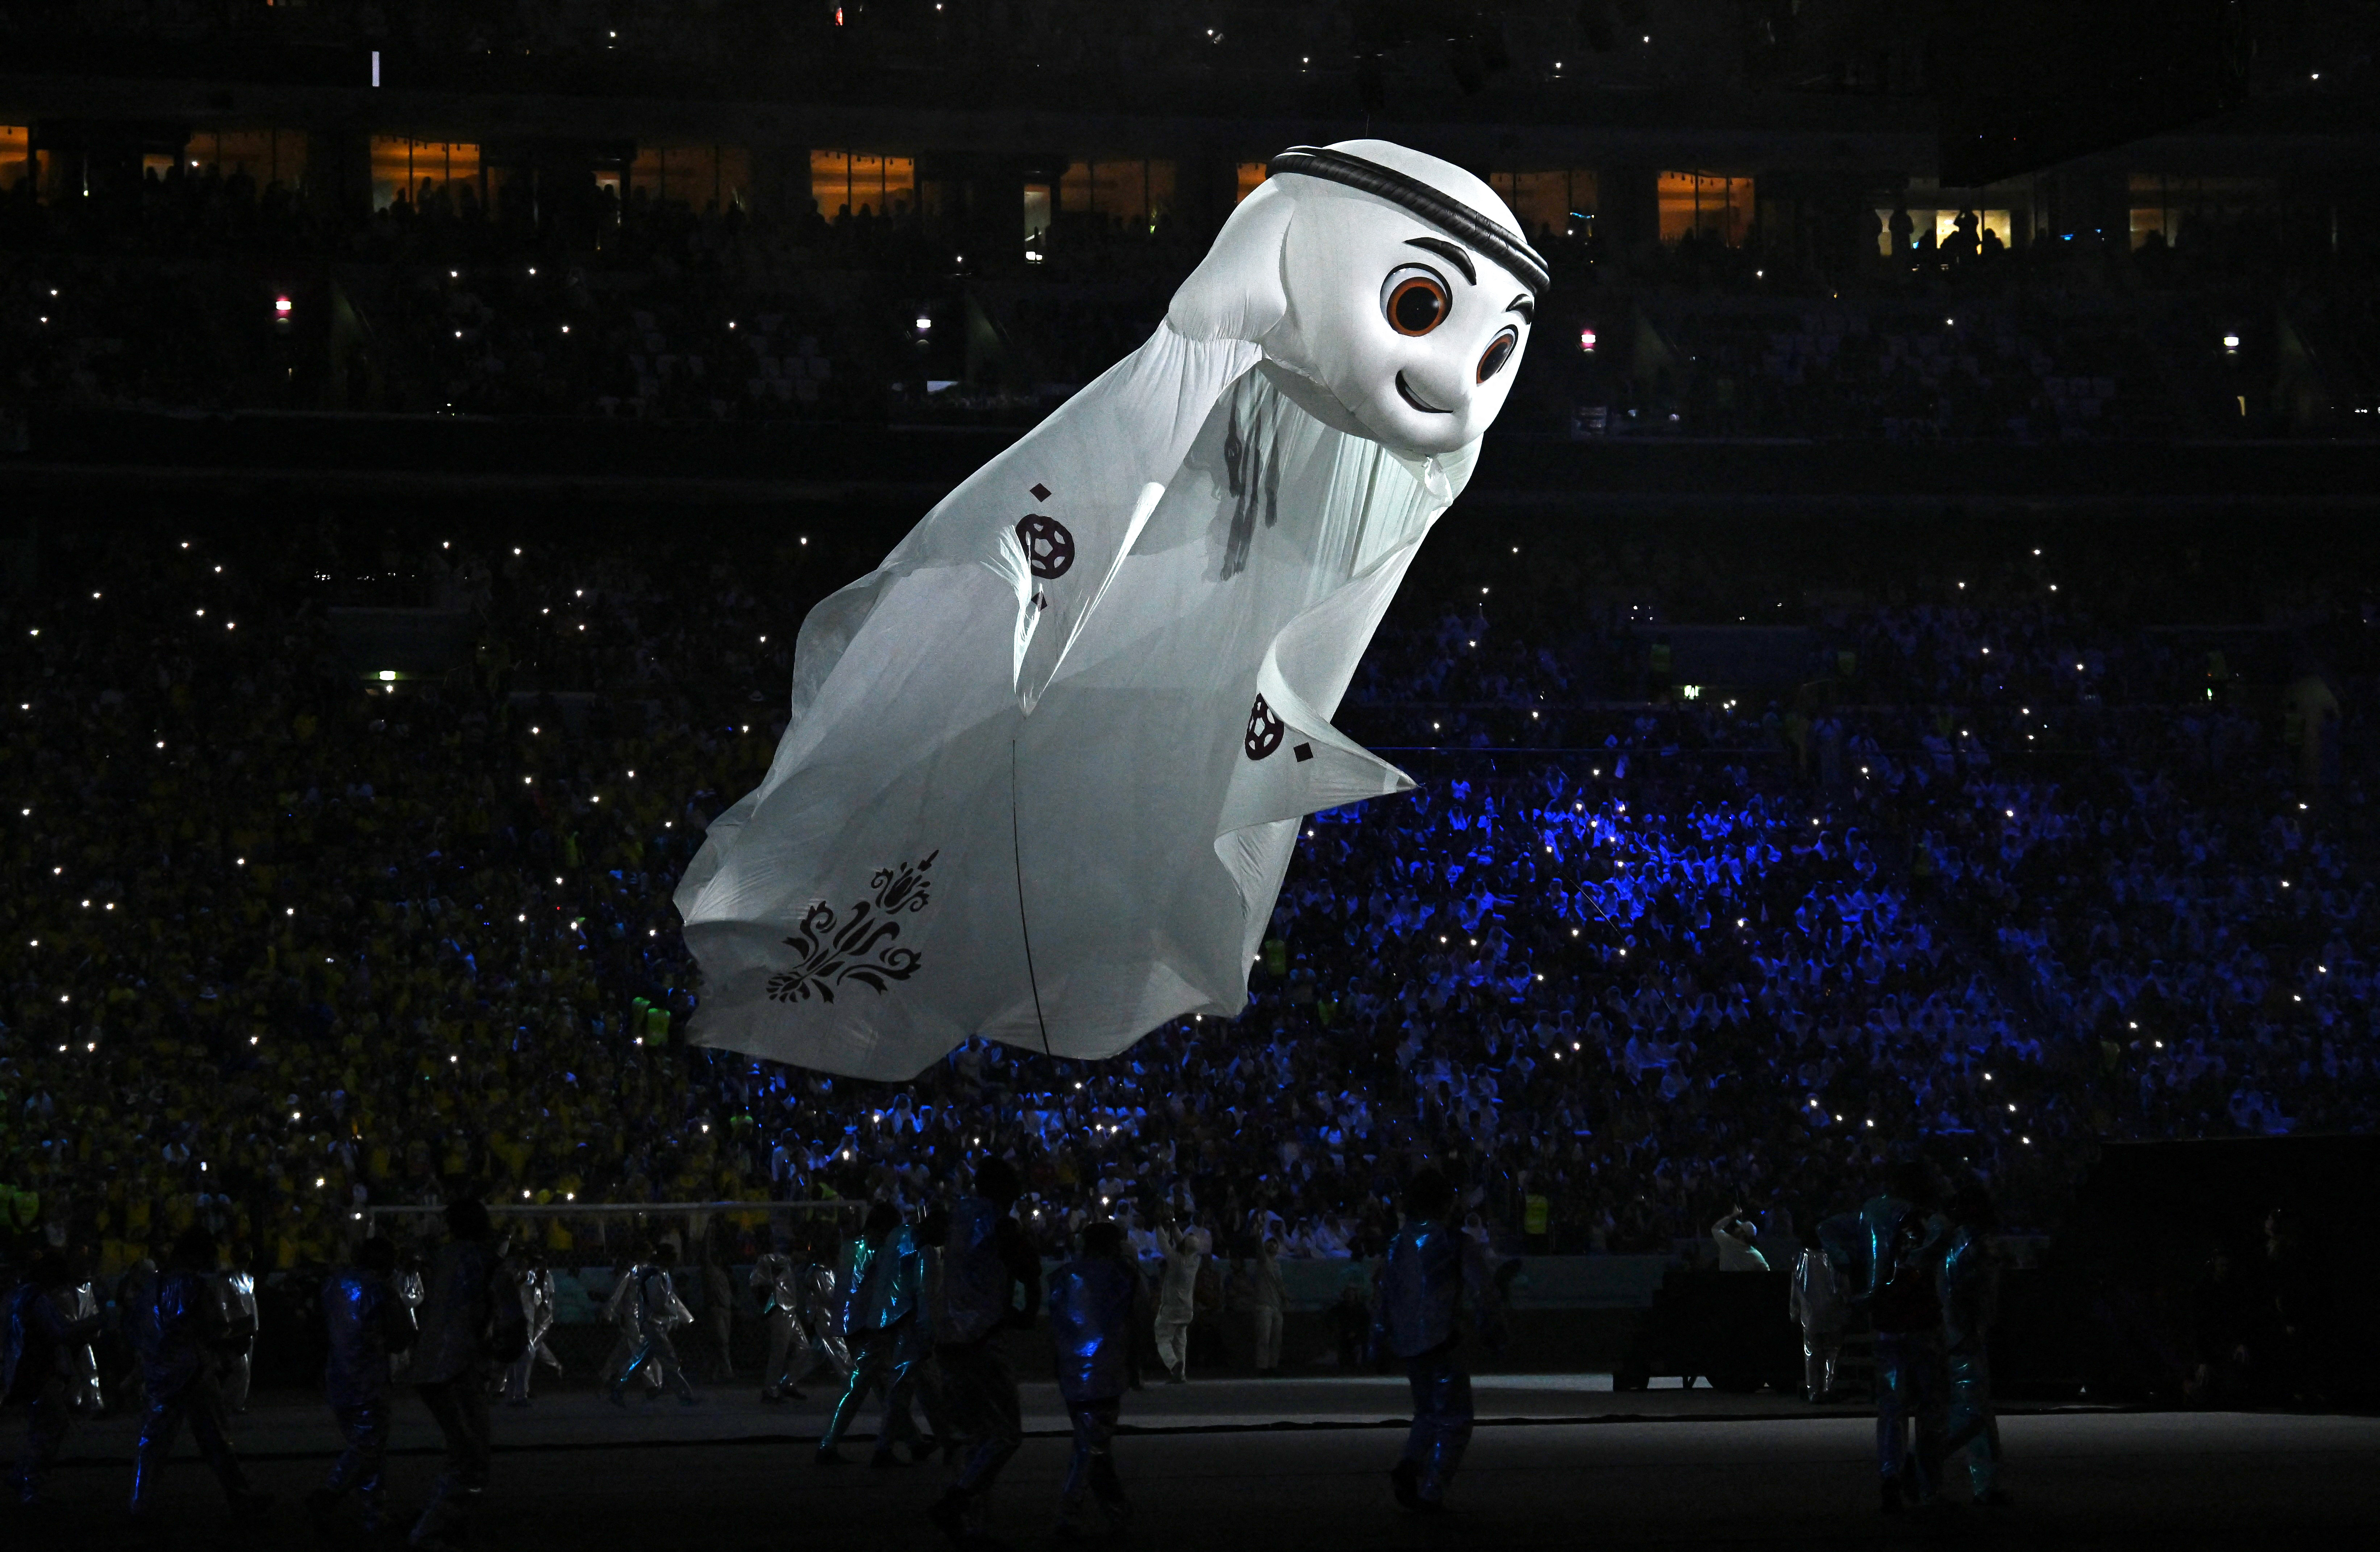 En los 35 minutos que duró el espectáculo, la ceremonia de inauguración del Mundial de Qatar 2022 tuvo de todo: color, luces y un catálogo de escenas de certámenes pasados (REUTERS/Dylan Martinez)